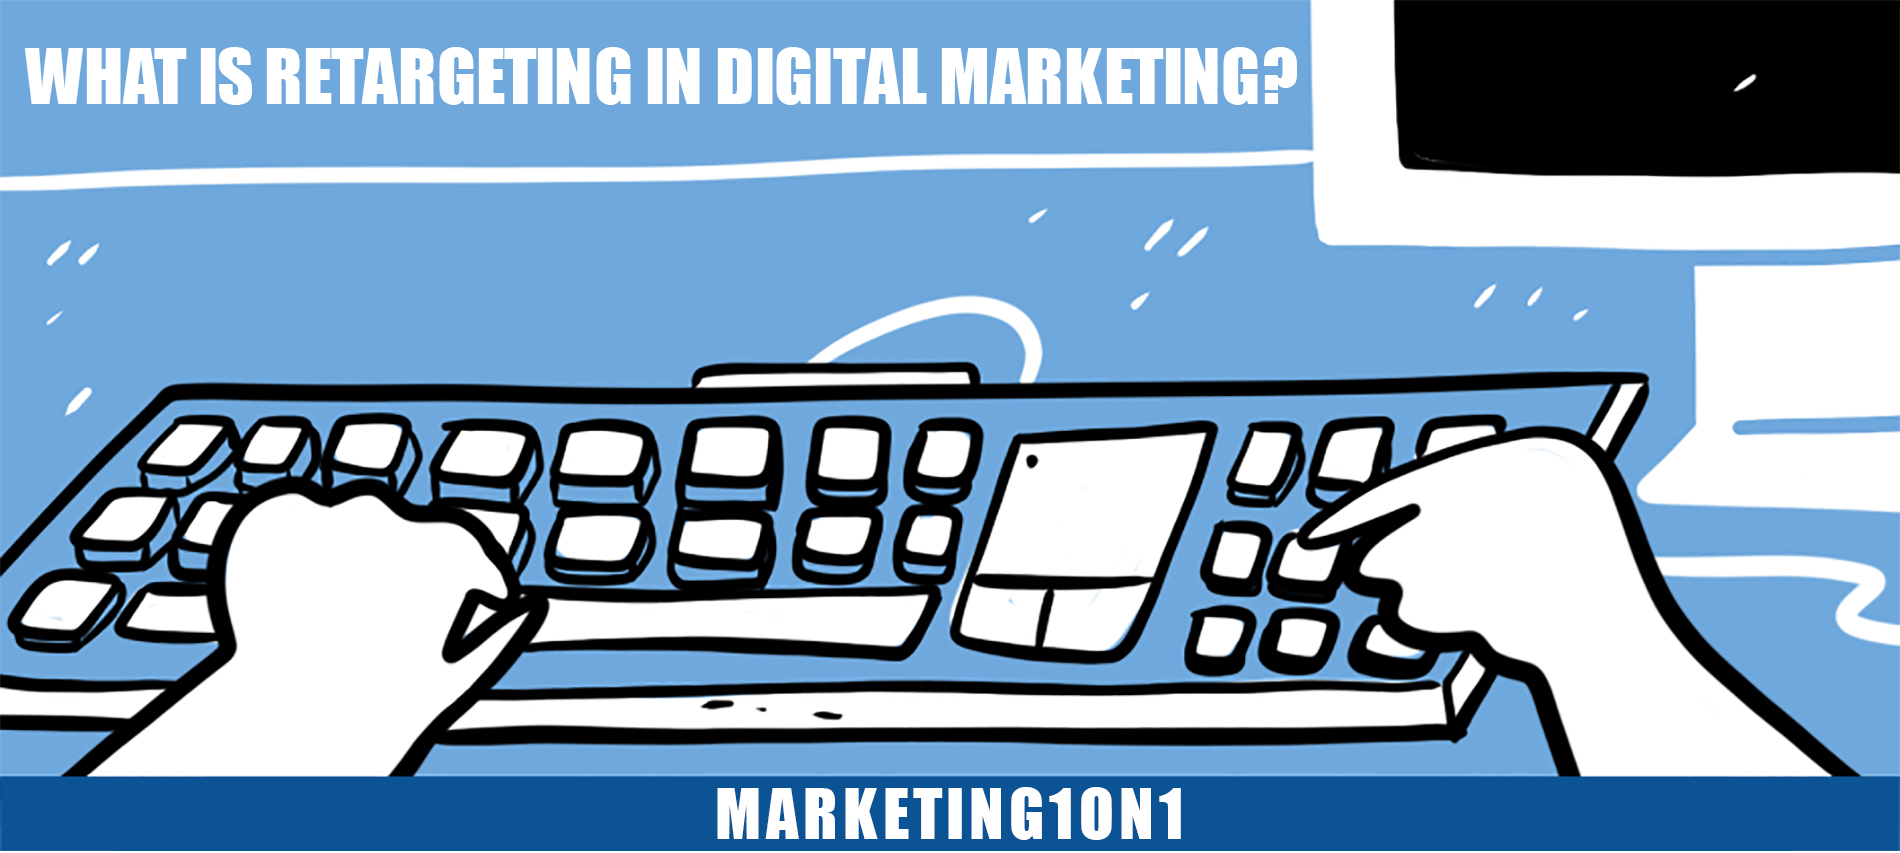 What is retargeting in digital marketing